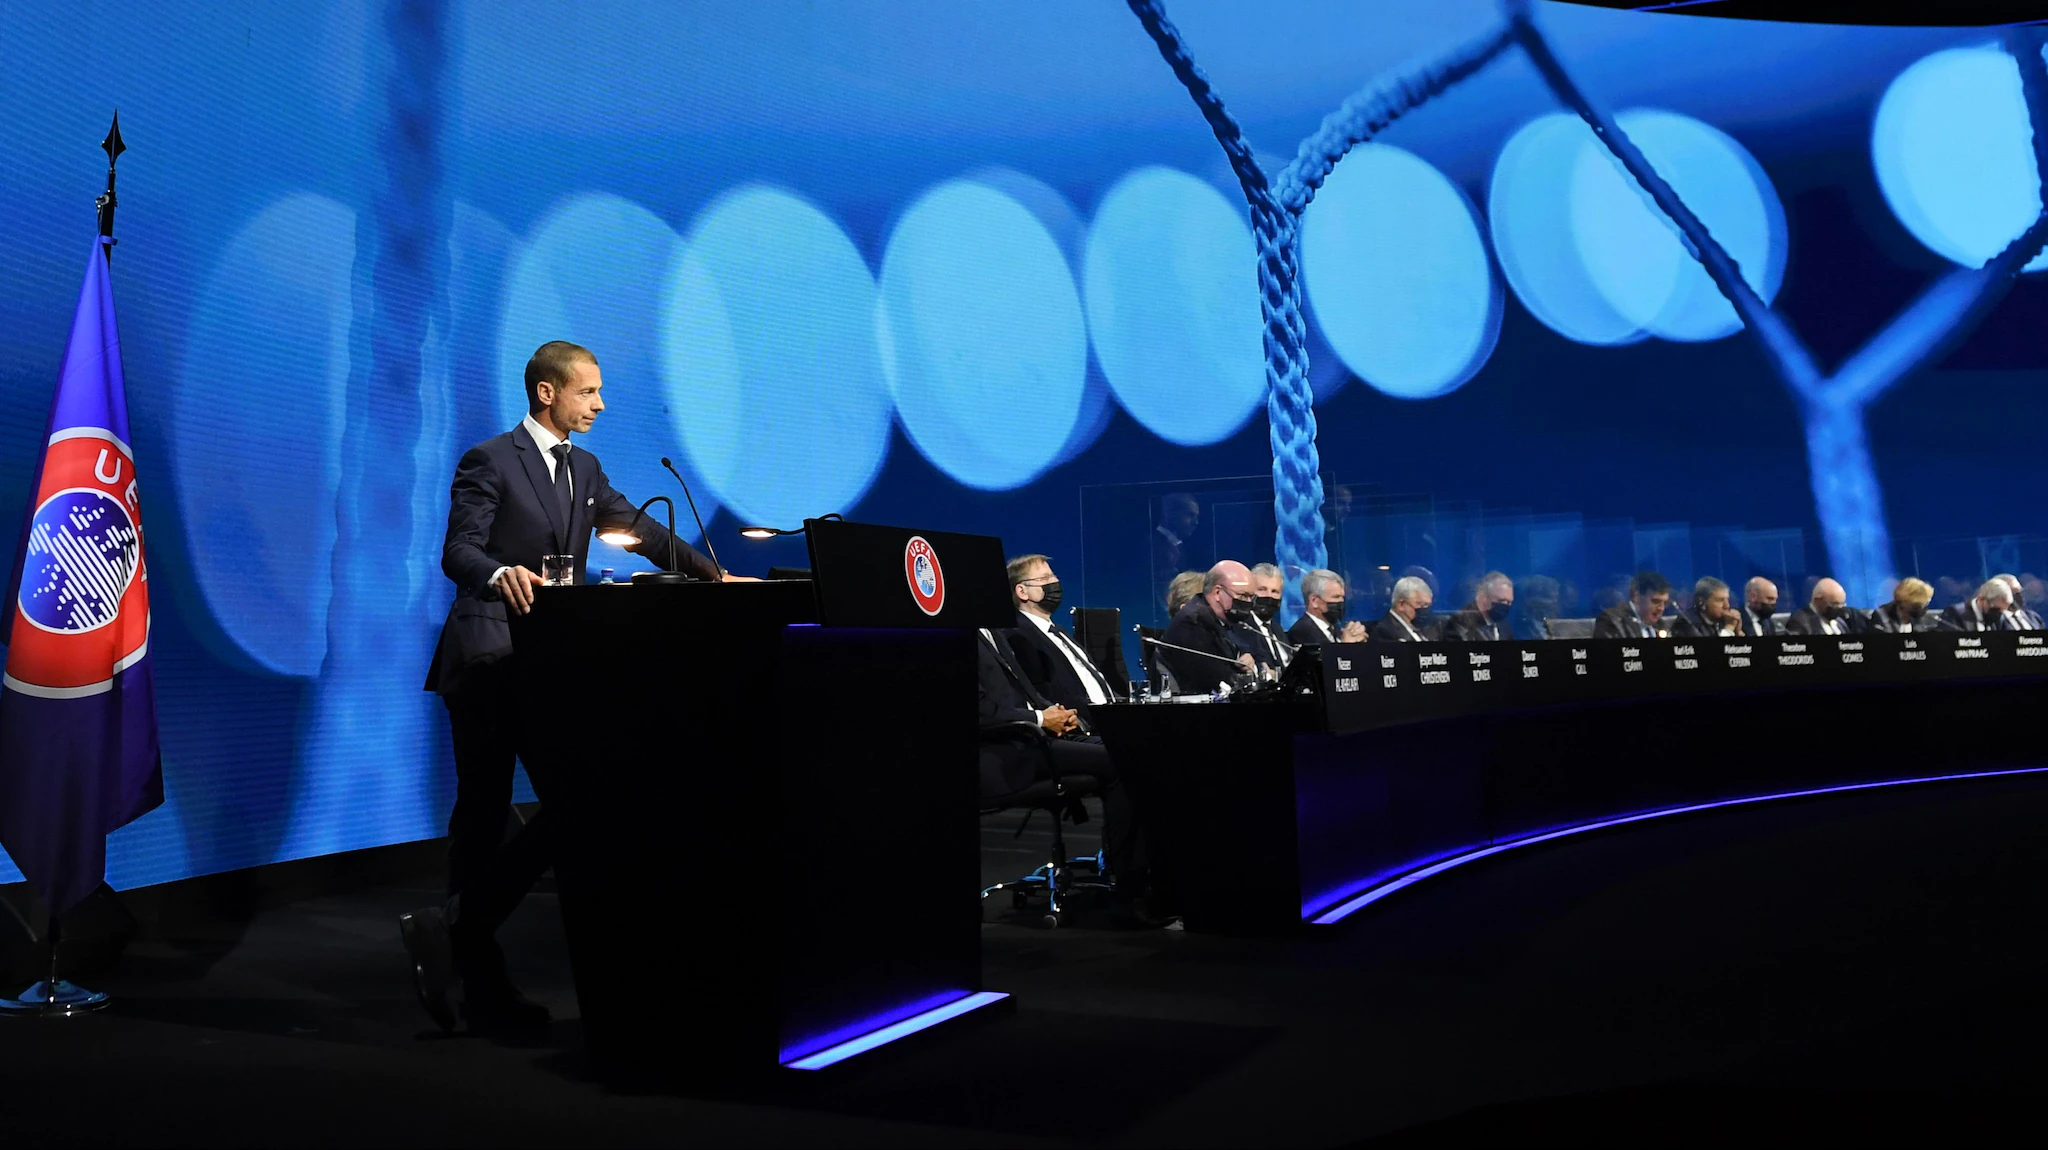 Mblidhet në Zvicër Kongresi i 45-të i UEFA-s, deklaratë mbi Super Ligën Europiane dhe vendimet e marra